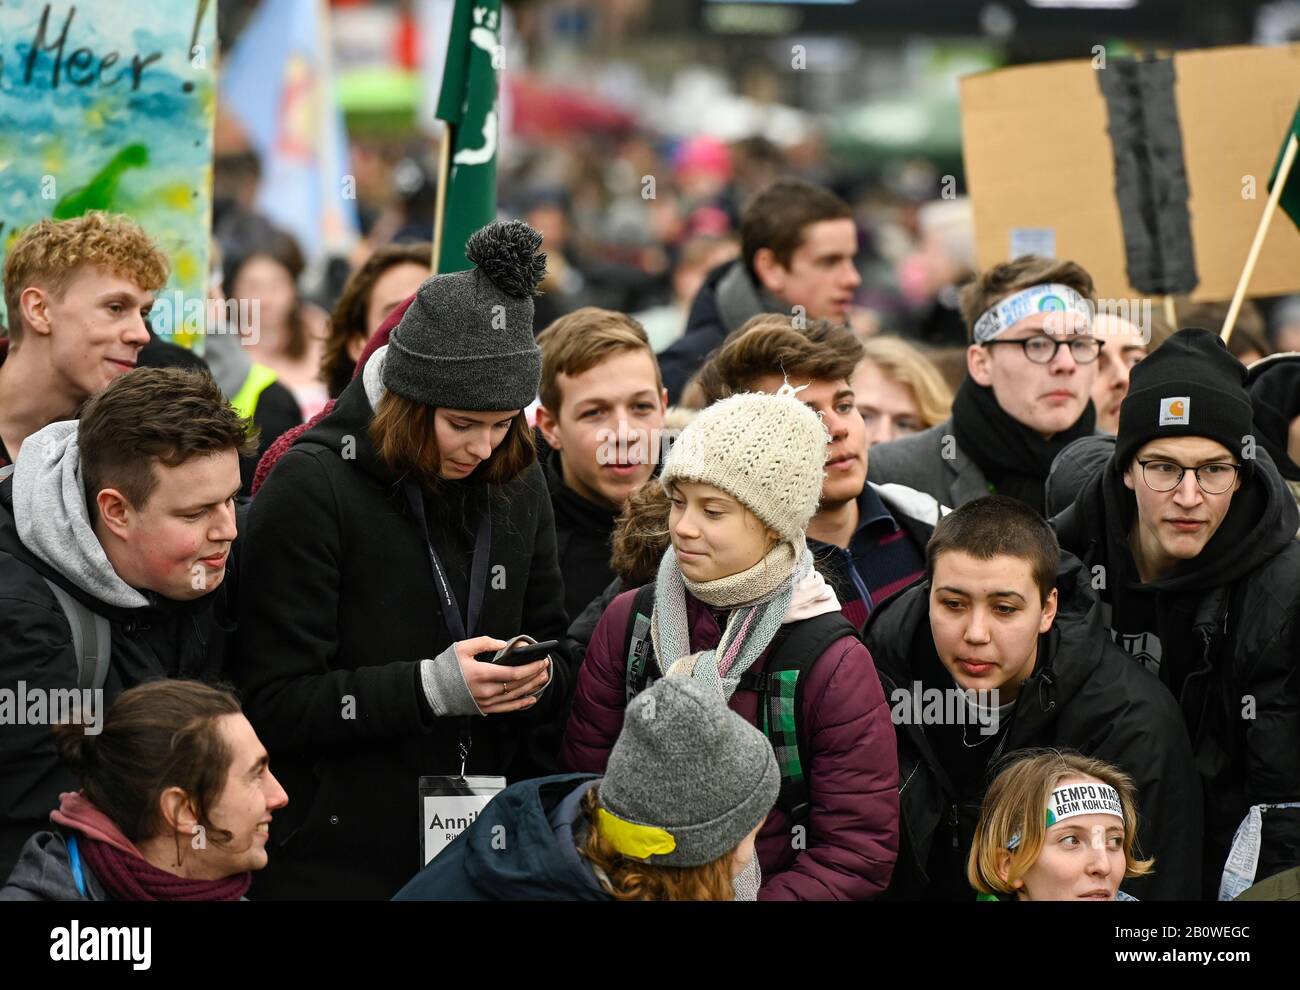 Alemania, Hamburgo ciudad, viernes para el movimiento futuro, Salvemos el Clima con 30.000 manifestantes para la protección del clima, en primera fila, la activista sueca Greta Thunberg / DEUTSCHLAND, Hamburgo, viernes para el futuro Bewegung, Demo fuer Klimaschutz, Greta Thunberg 21.2.2020 Foto de stock